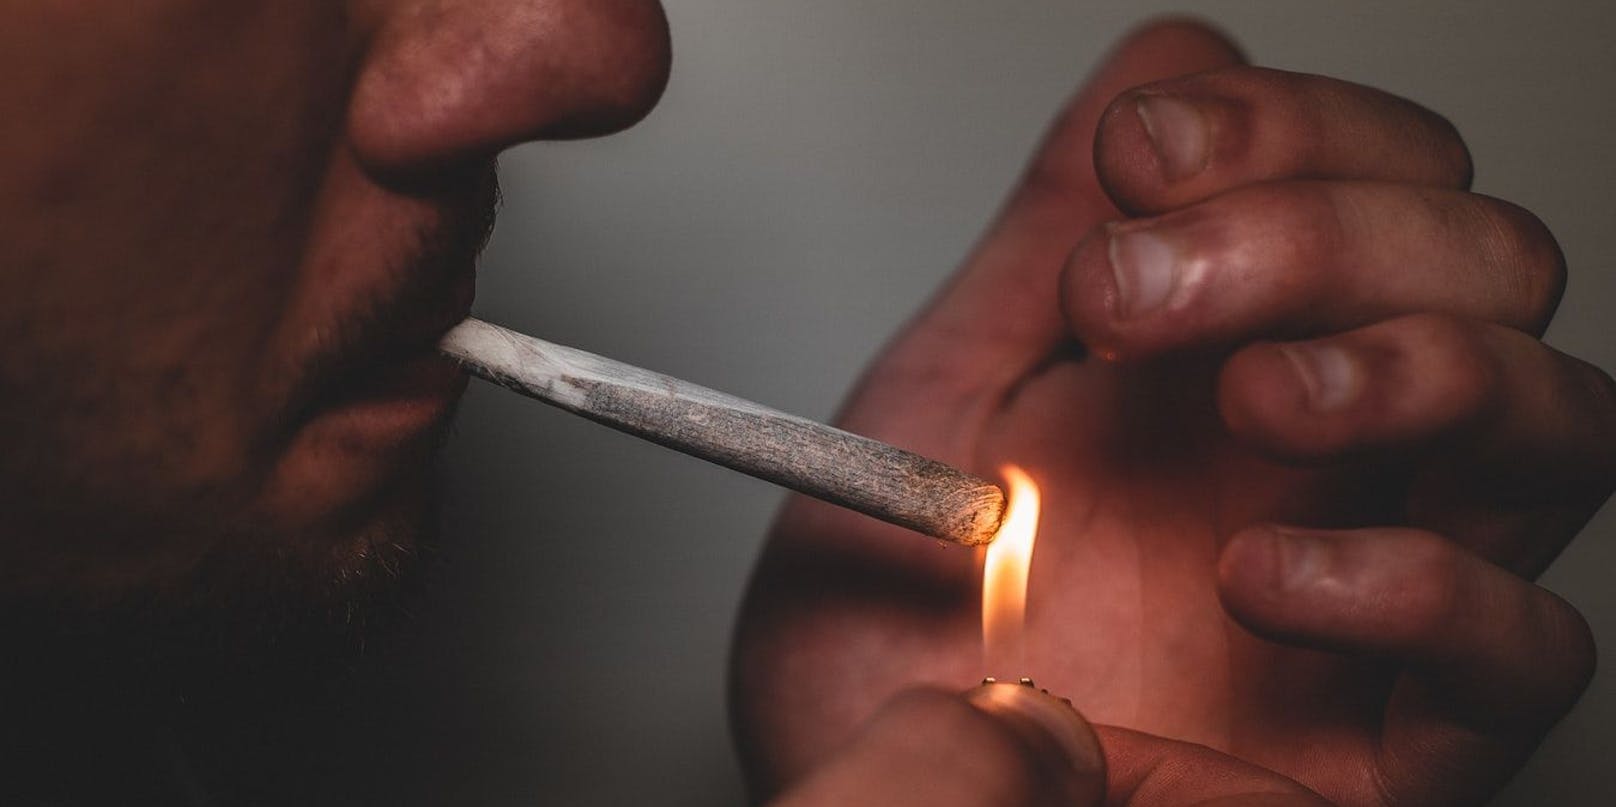 Konsumerfahrungen mit illegalen Drogen finden in Österreich am häufigsten mit Cannabis statt.